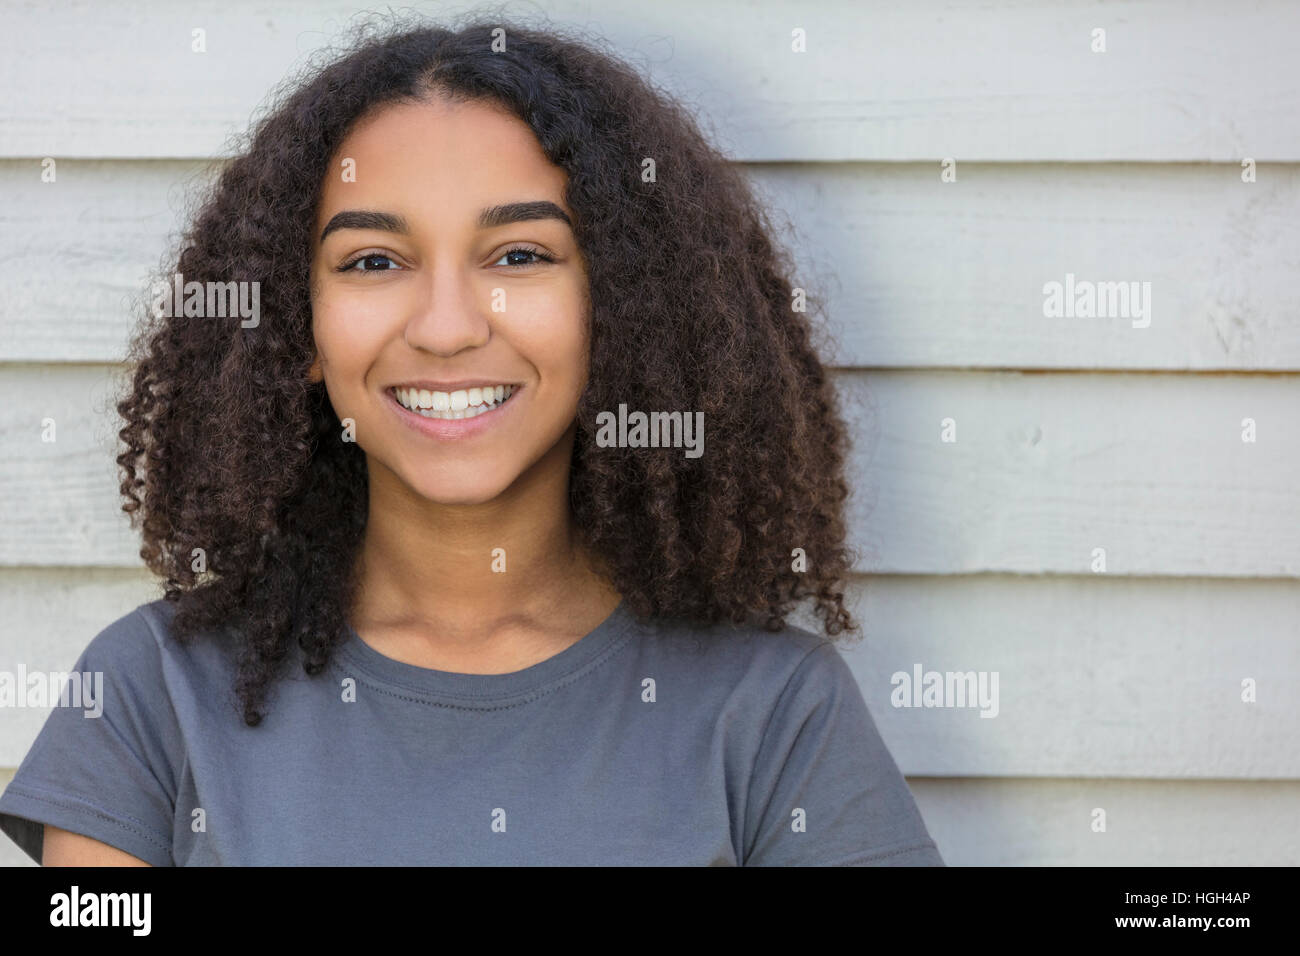 Portrait plein air de belle happy mixed race African American girl smiling adolescent enfant femelle avec dents parfaite Banque D'Images